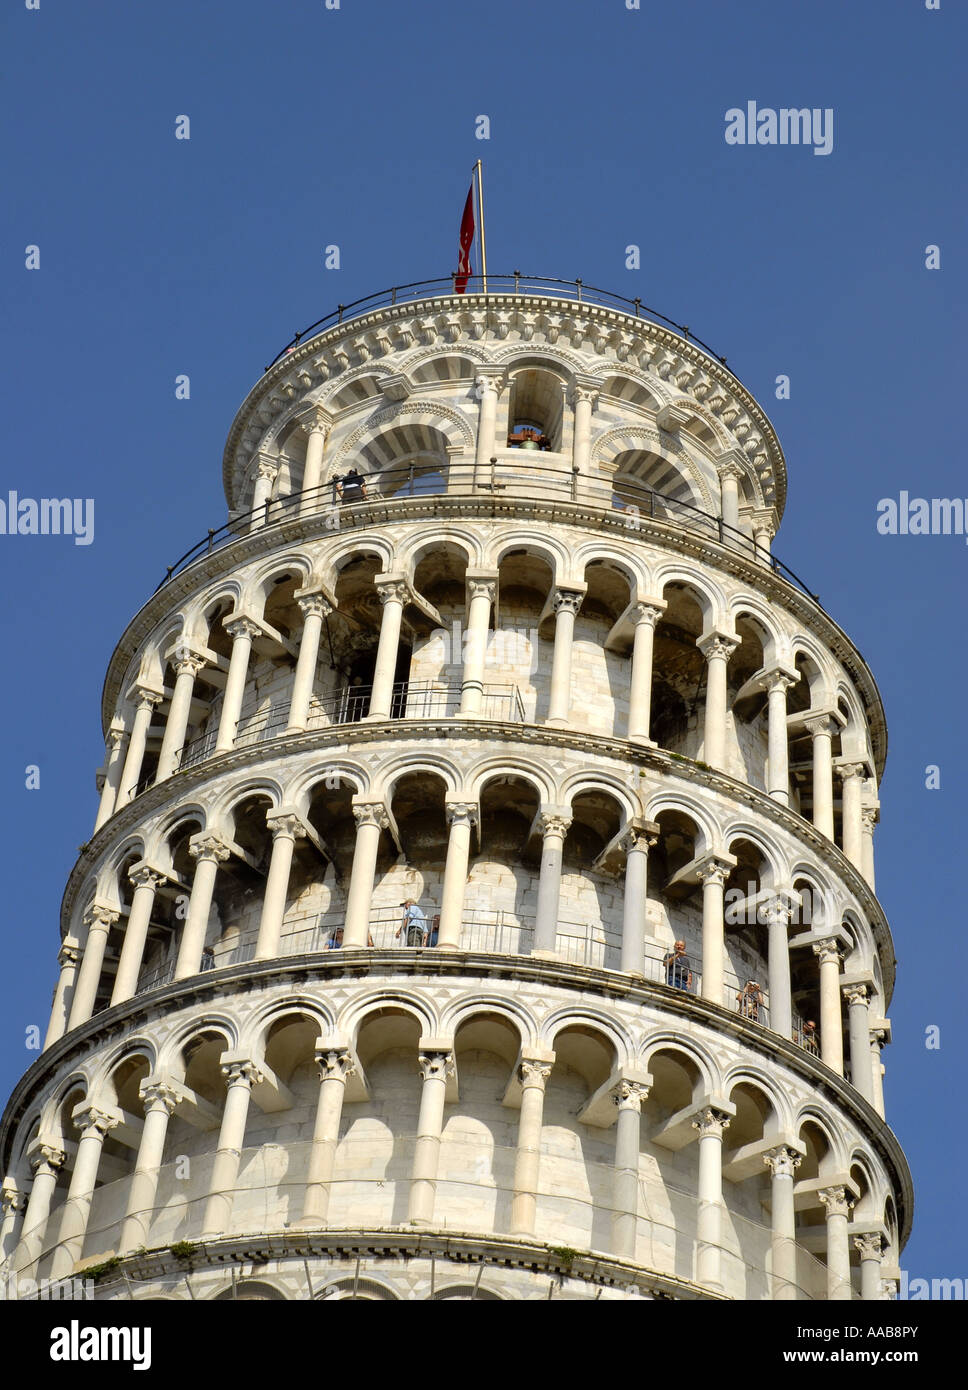 La Tour Penchée de Pise. La 'Piazza dei Miracoli' en cours de travaux de restauration. La toscane, italie. Avril 2007 Banque D'Images